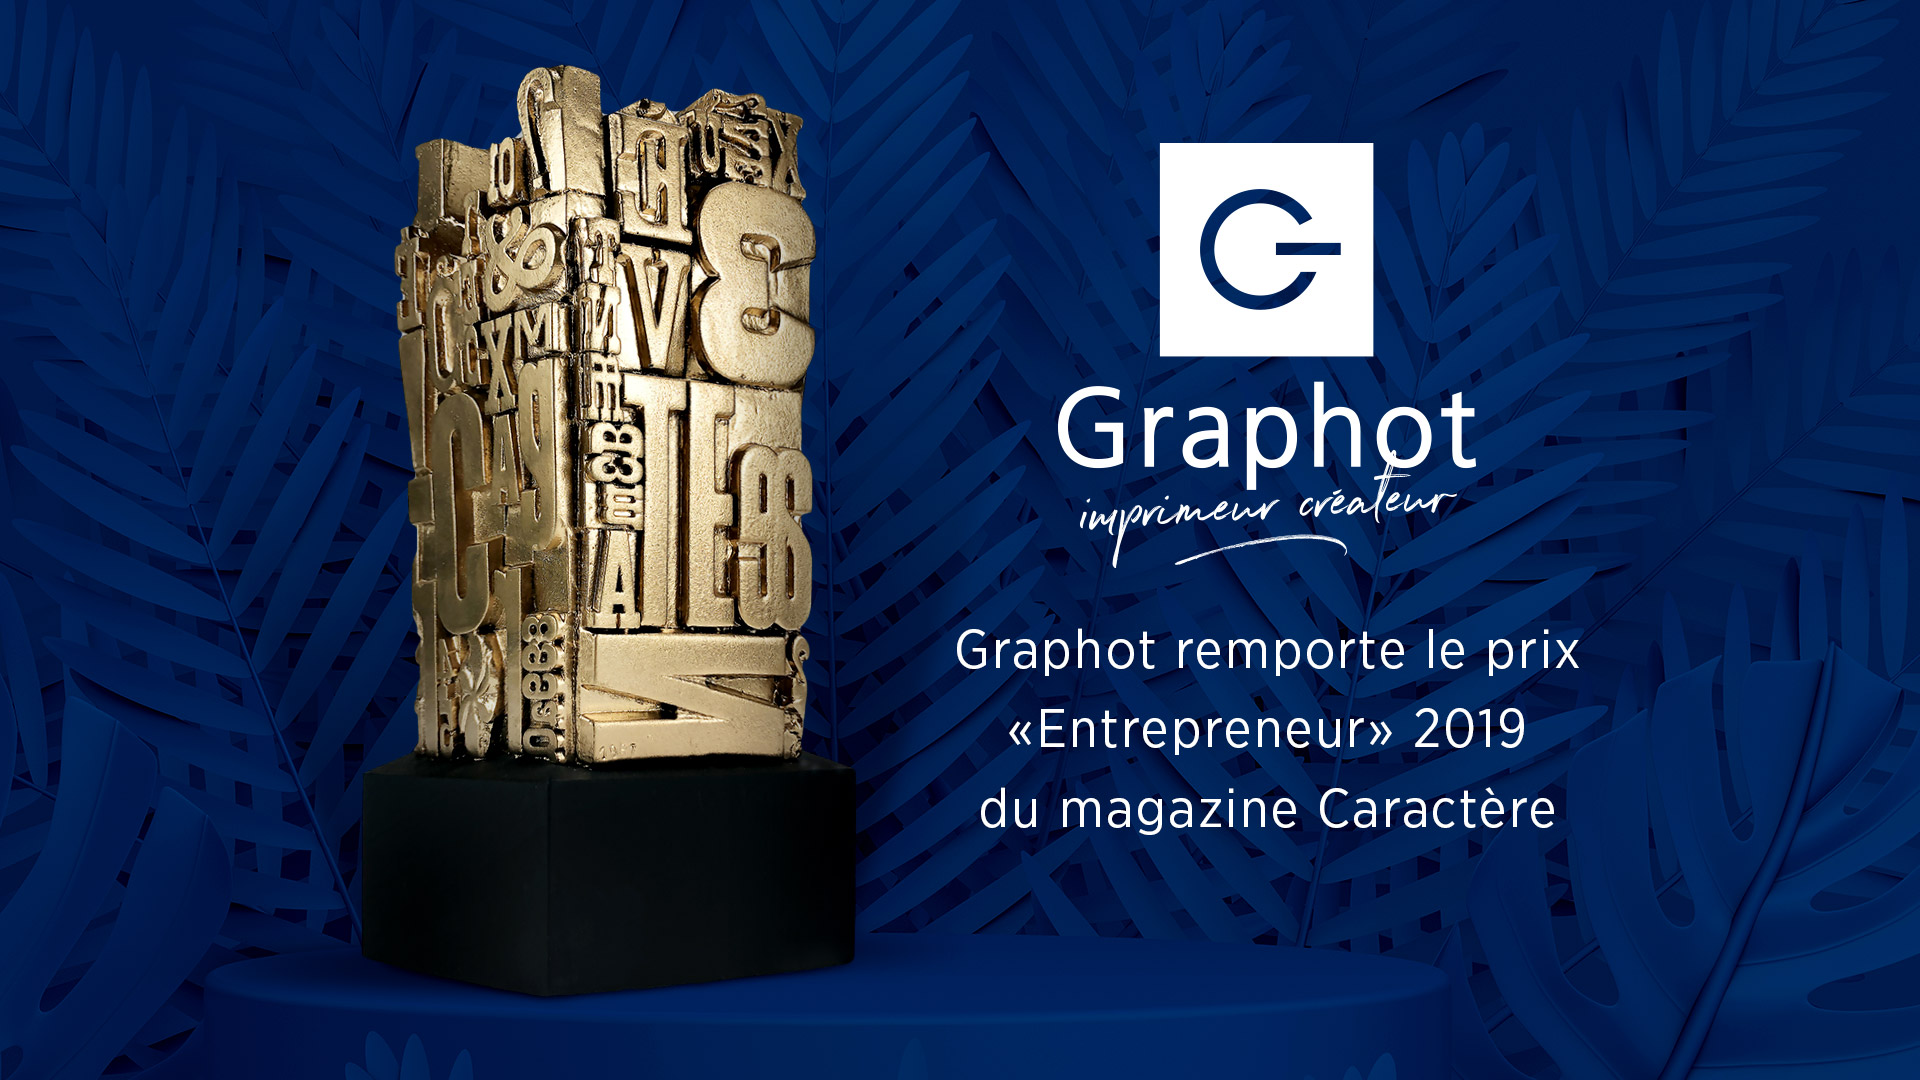 Graphot remporte le prix "Entrepreneur" 2019 du Magazine Caractère